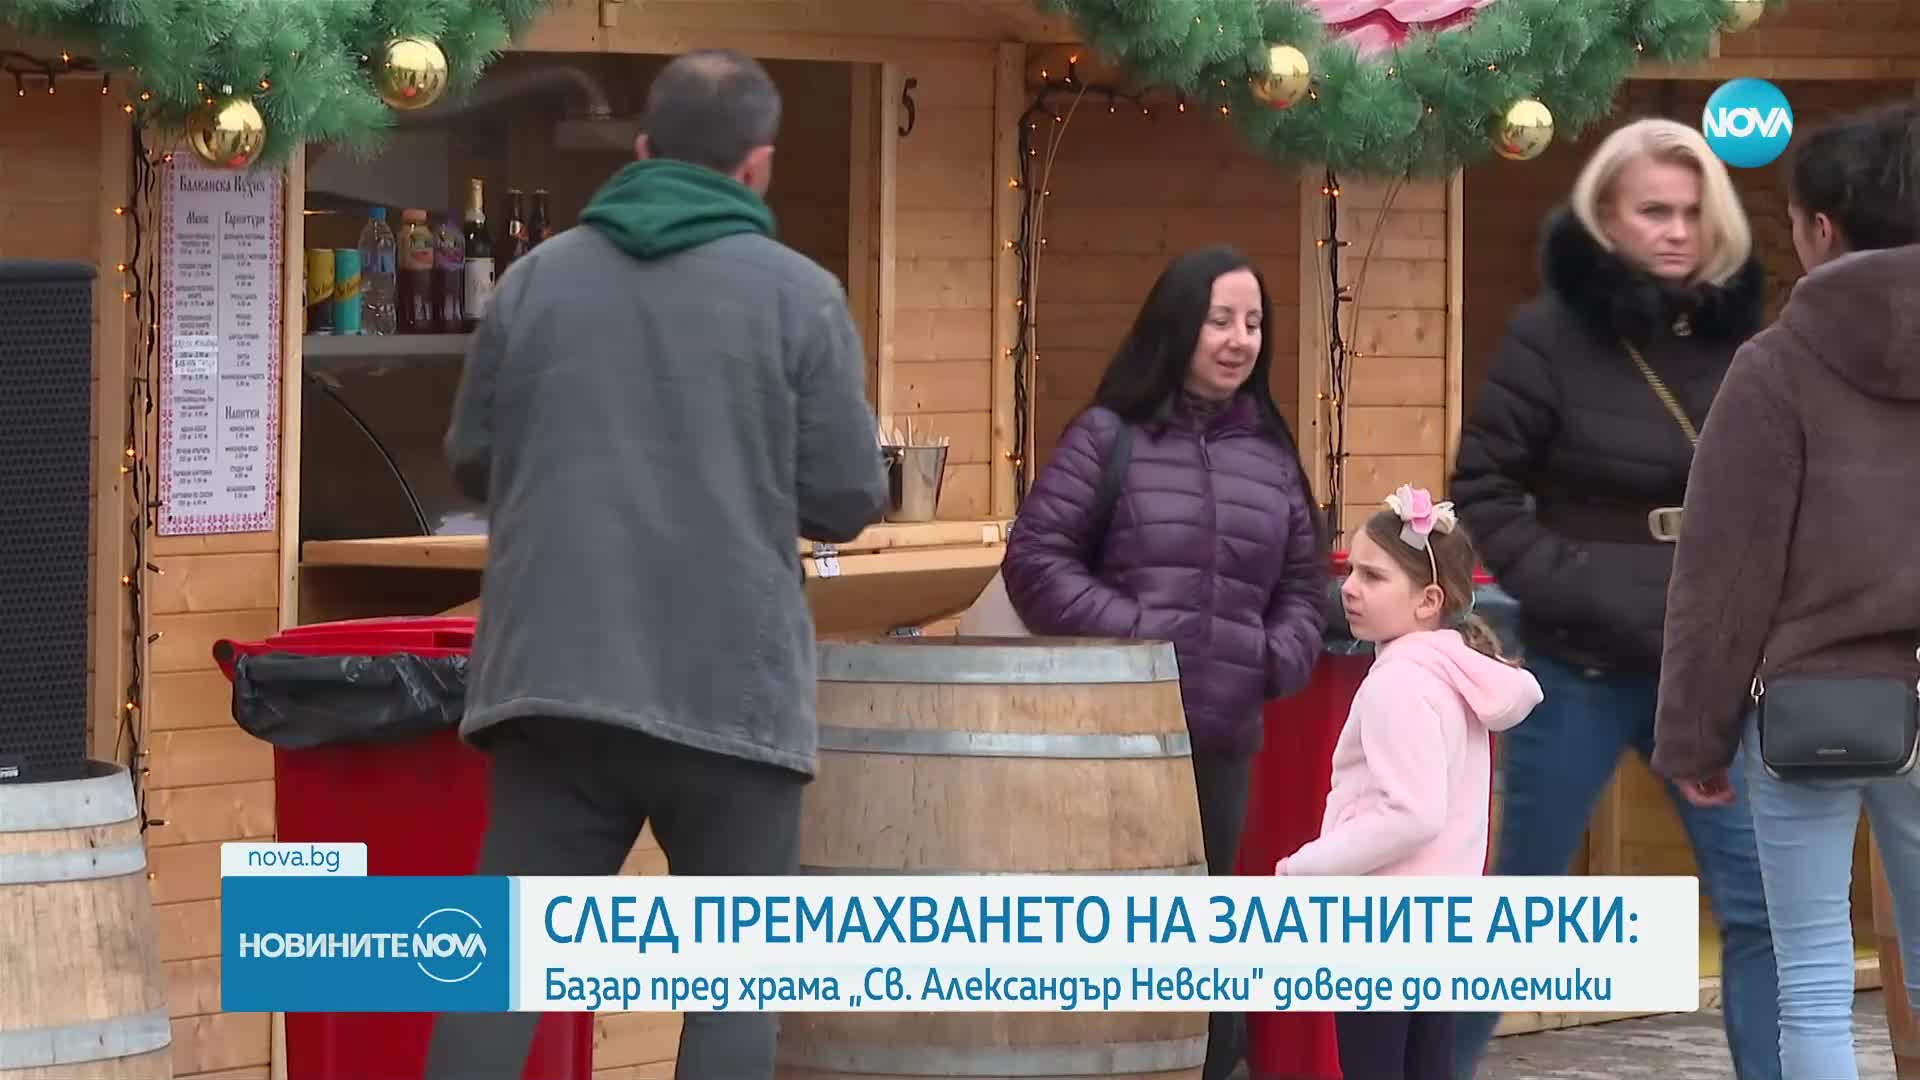 Коледен базар пред храма „Св. Александър Невски” предизвика дискусии сред софиянци